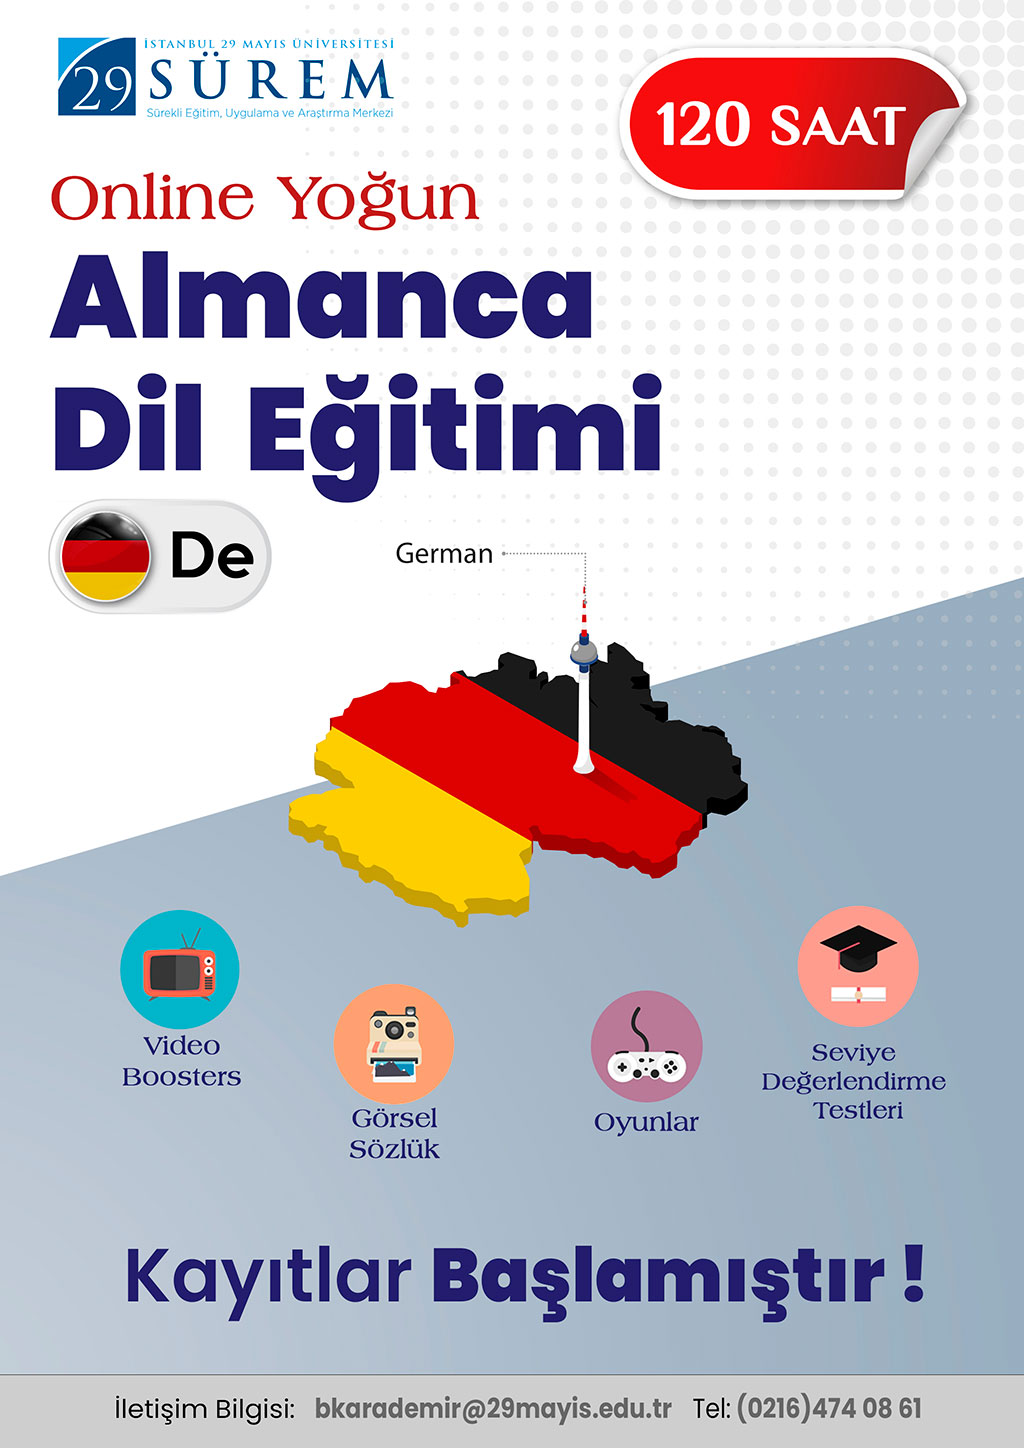 Online Yoğun Almanca Dil Eğitimi